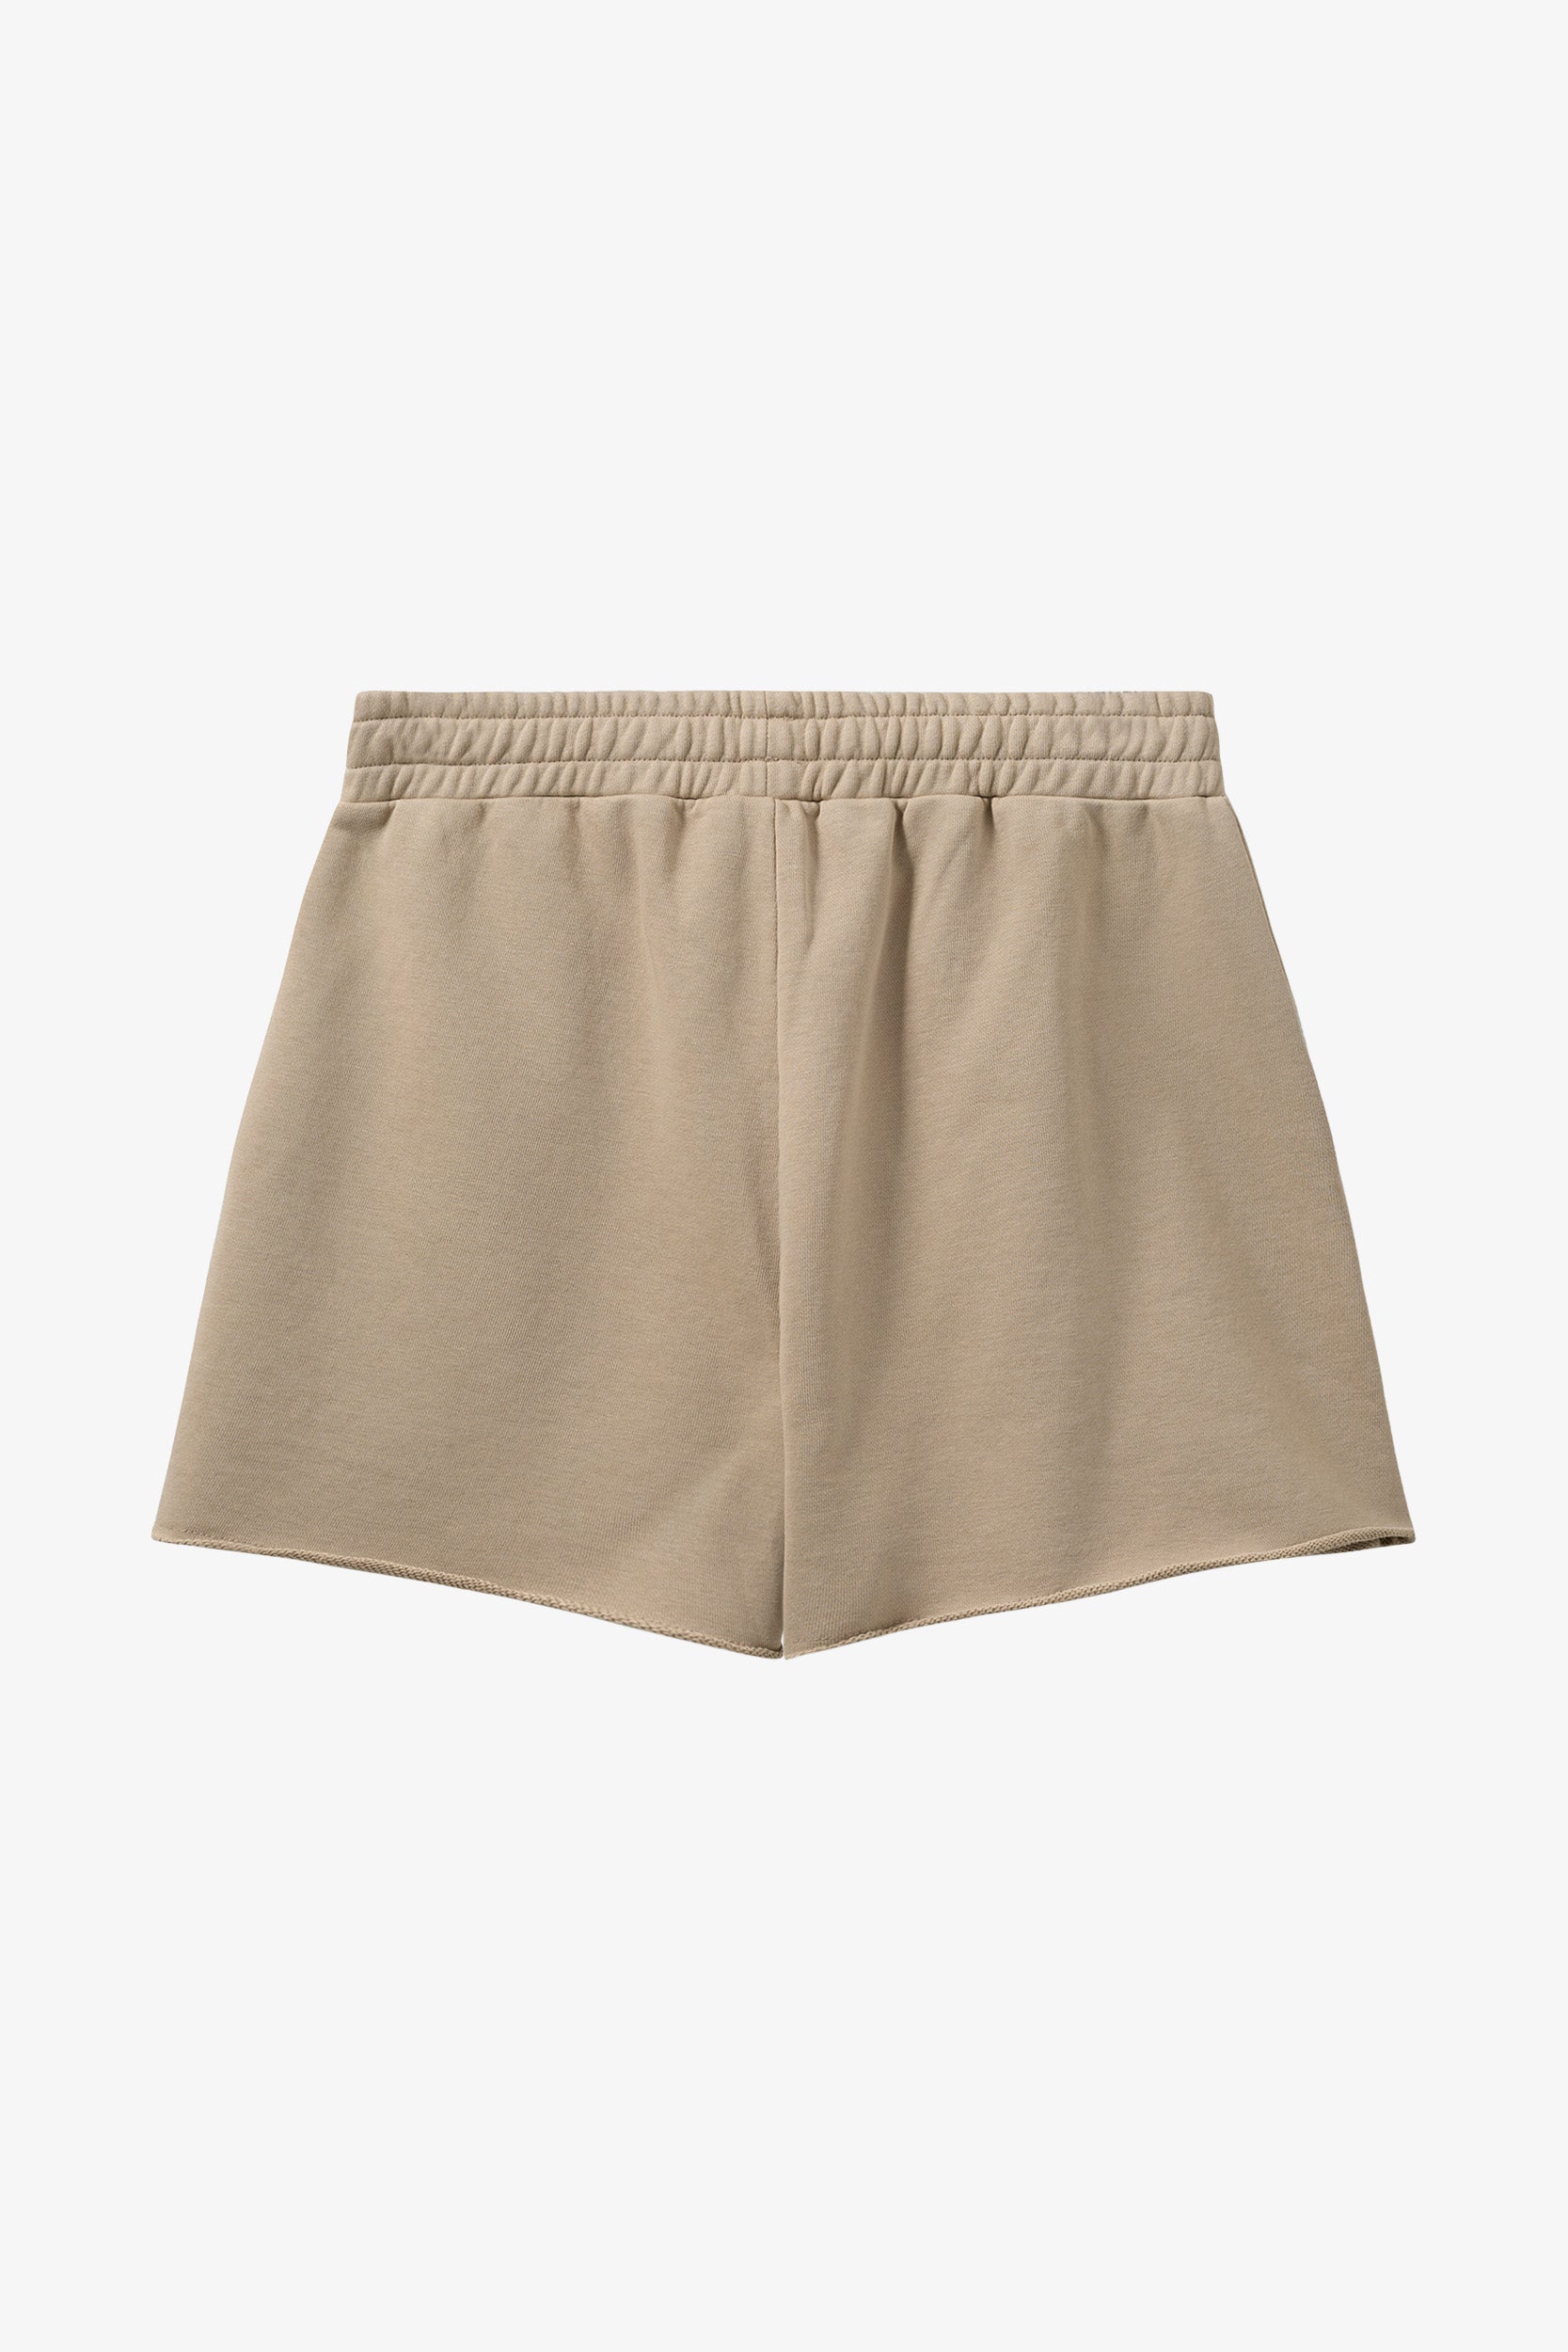 Pro Sweat Shorts - Creamy Grey